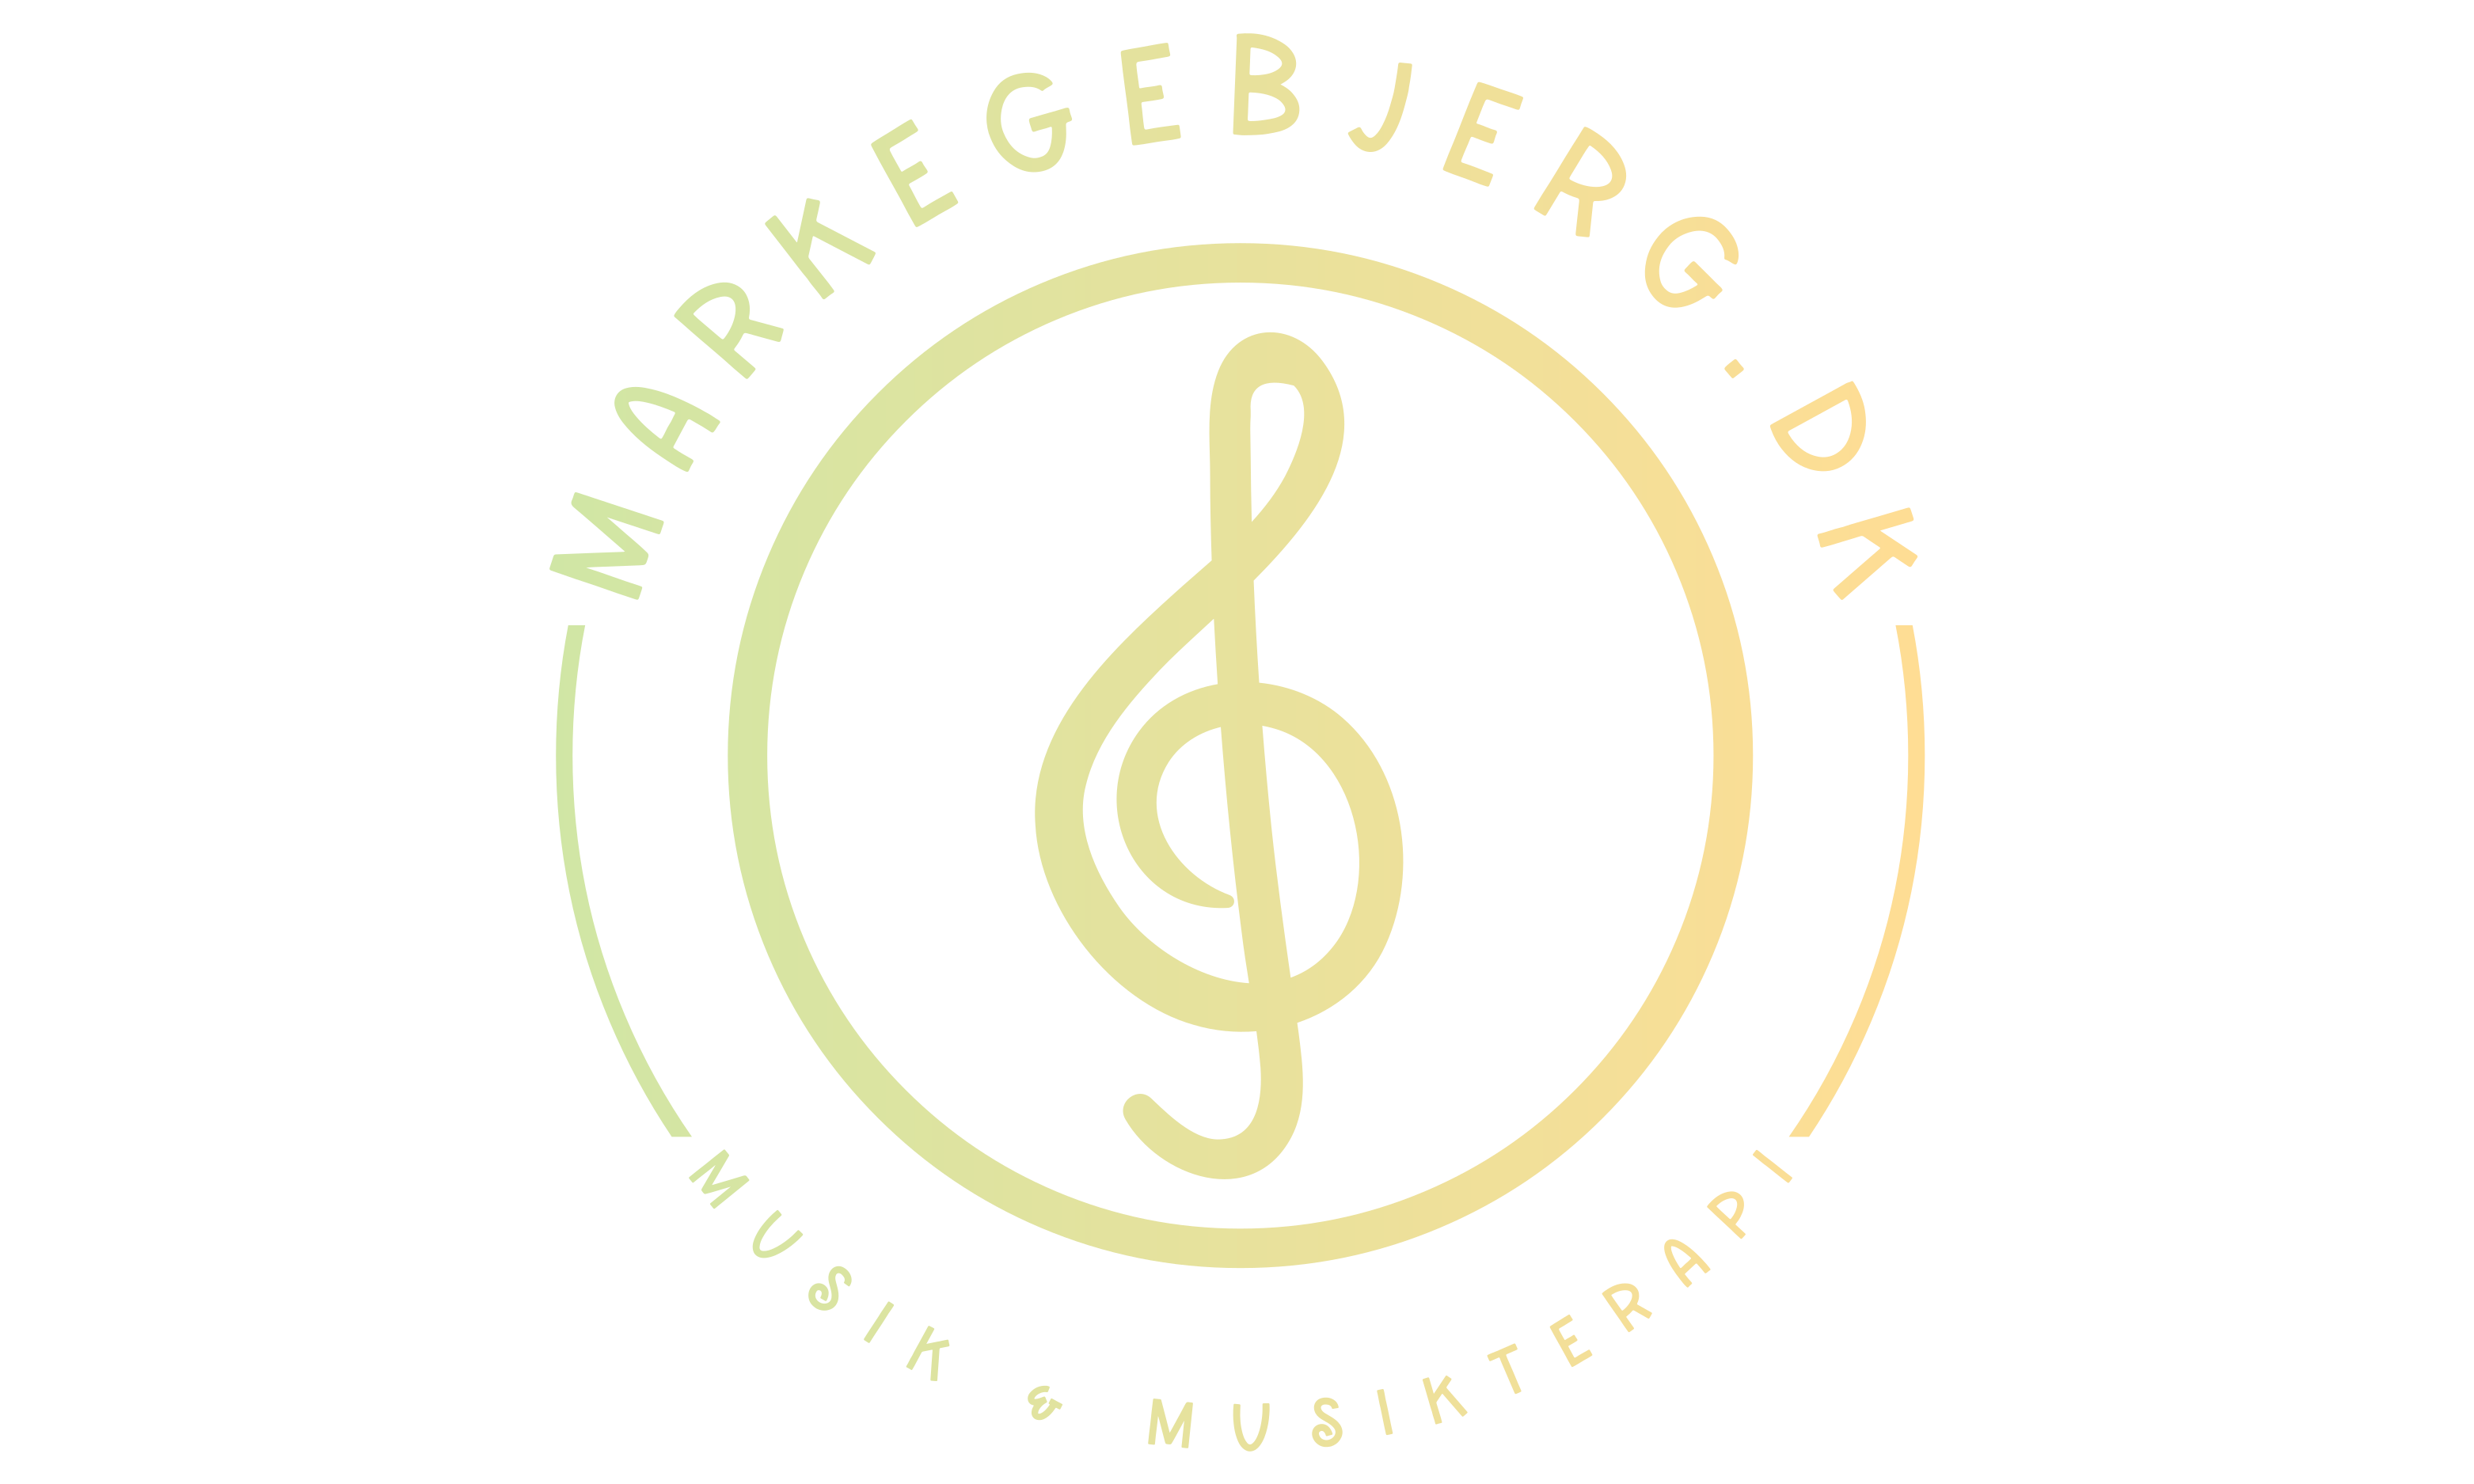 markegebjerg.dk